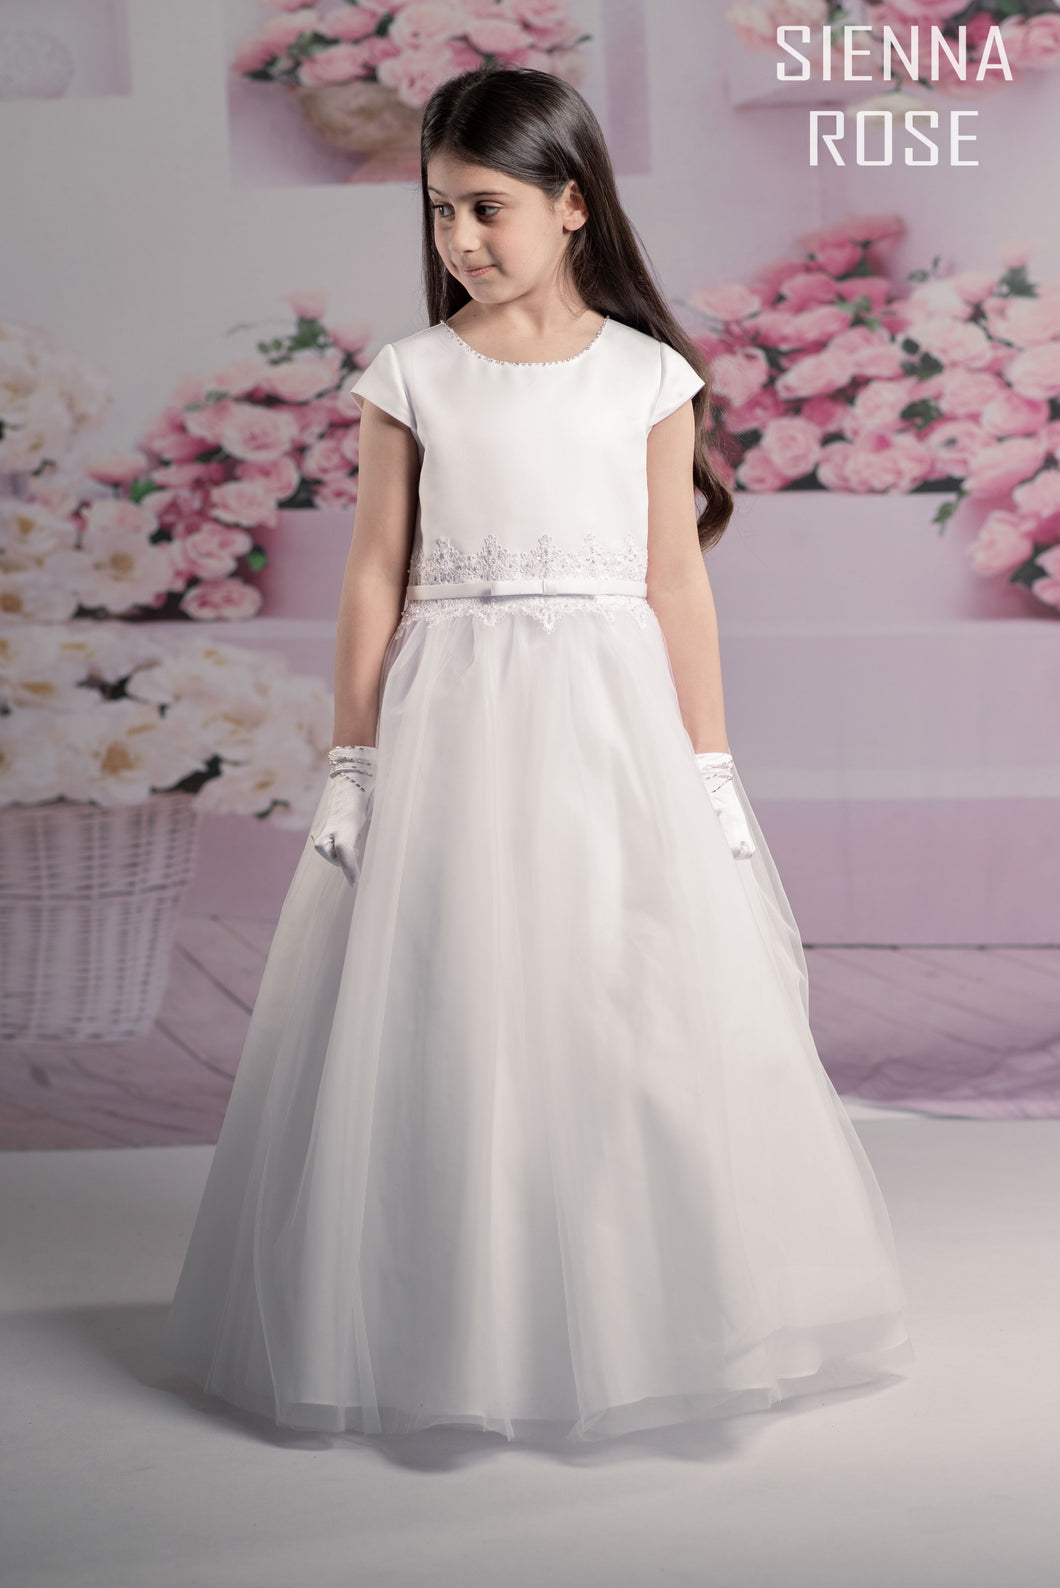 Sienna Rose By Sweetie Pie Girls White Communion Dress:- SR702